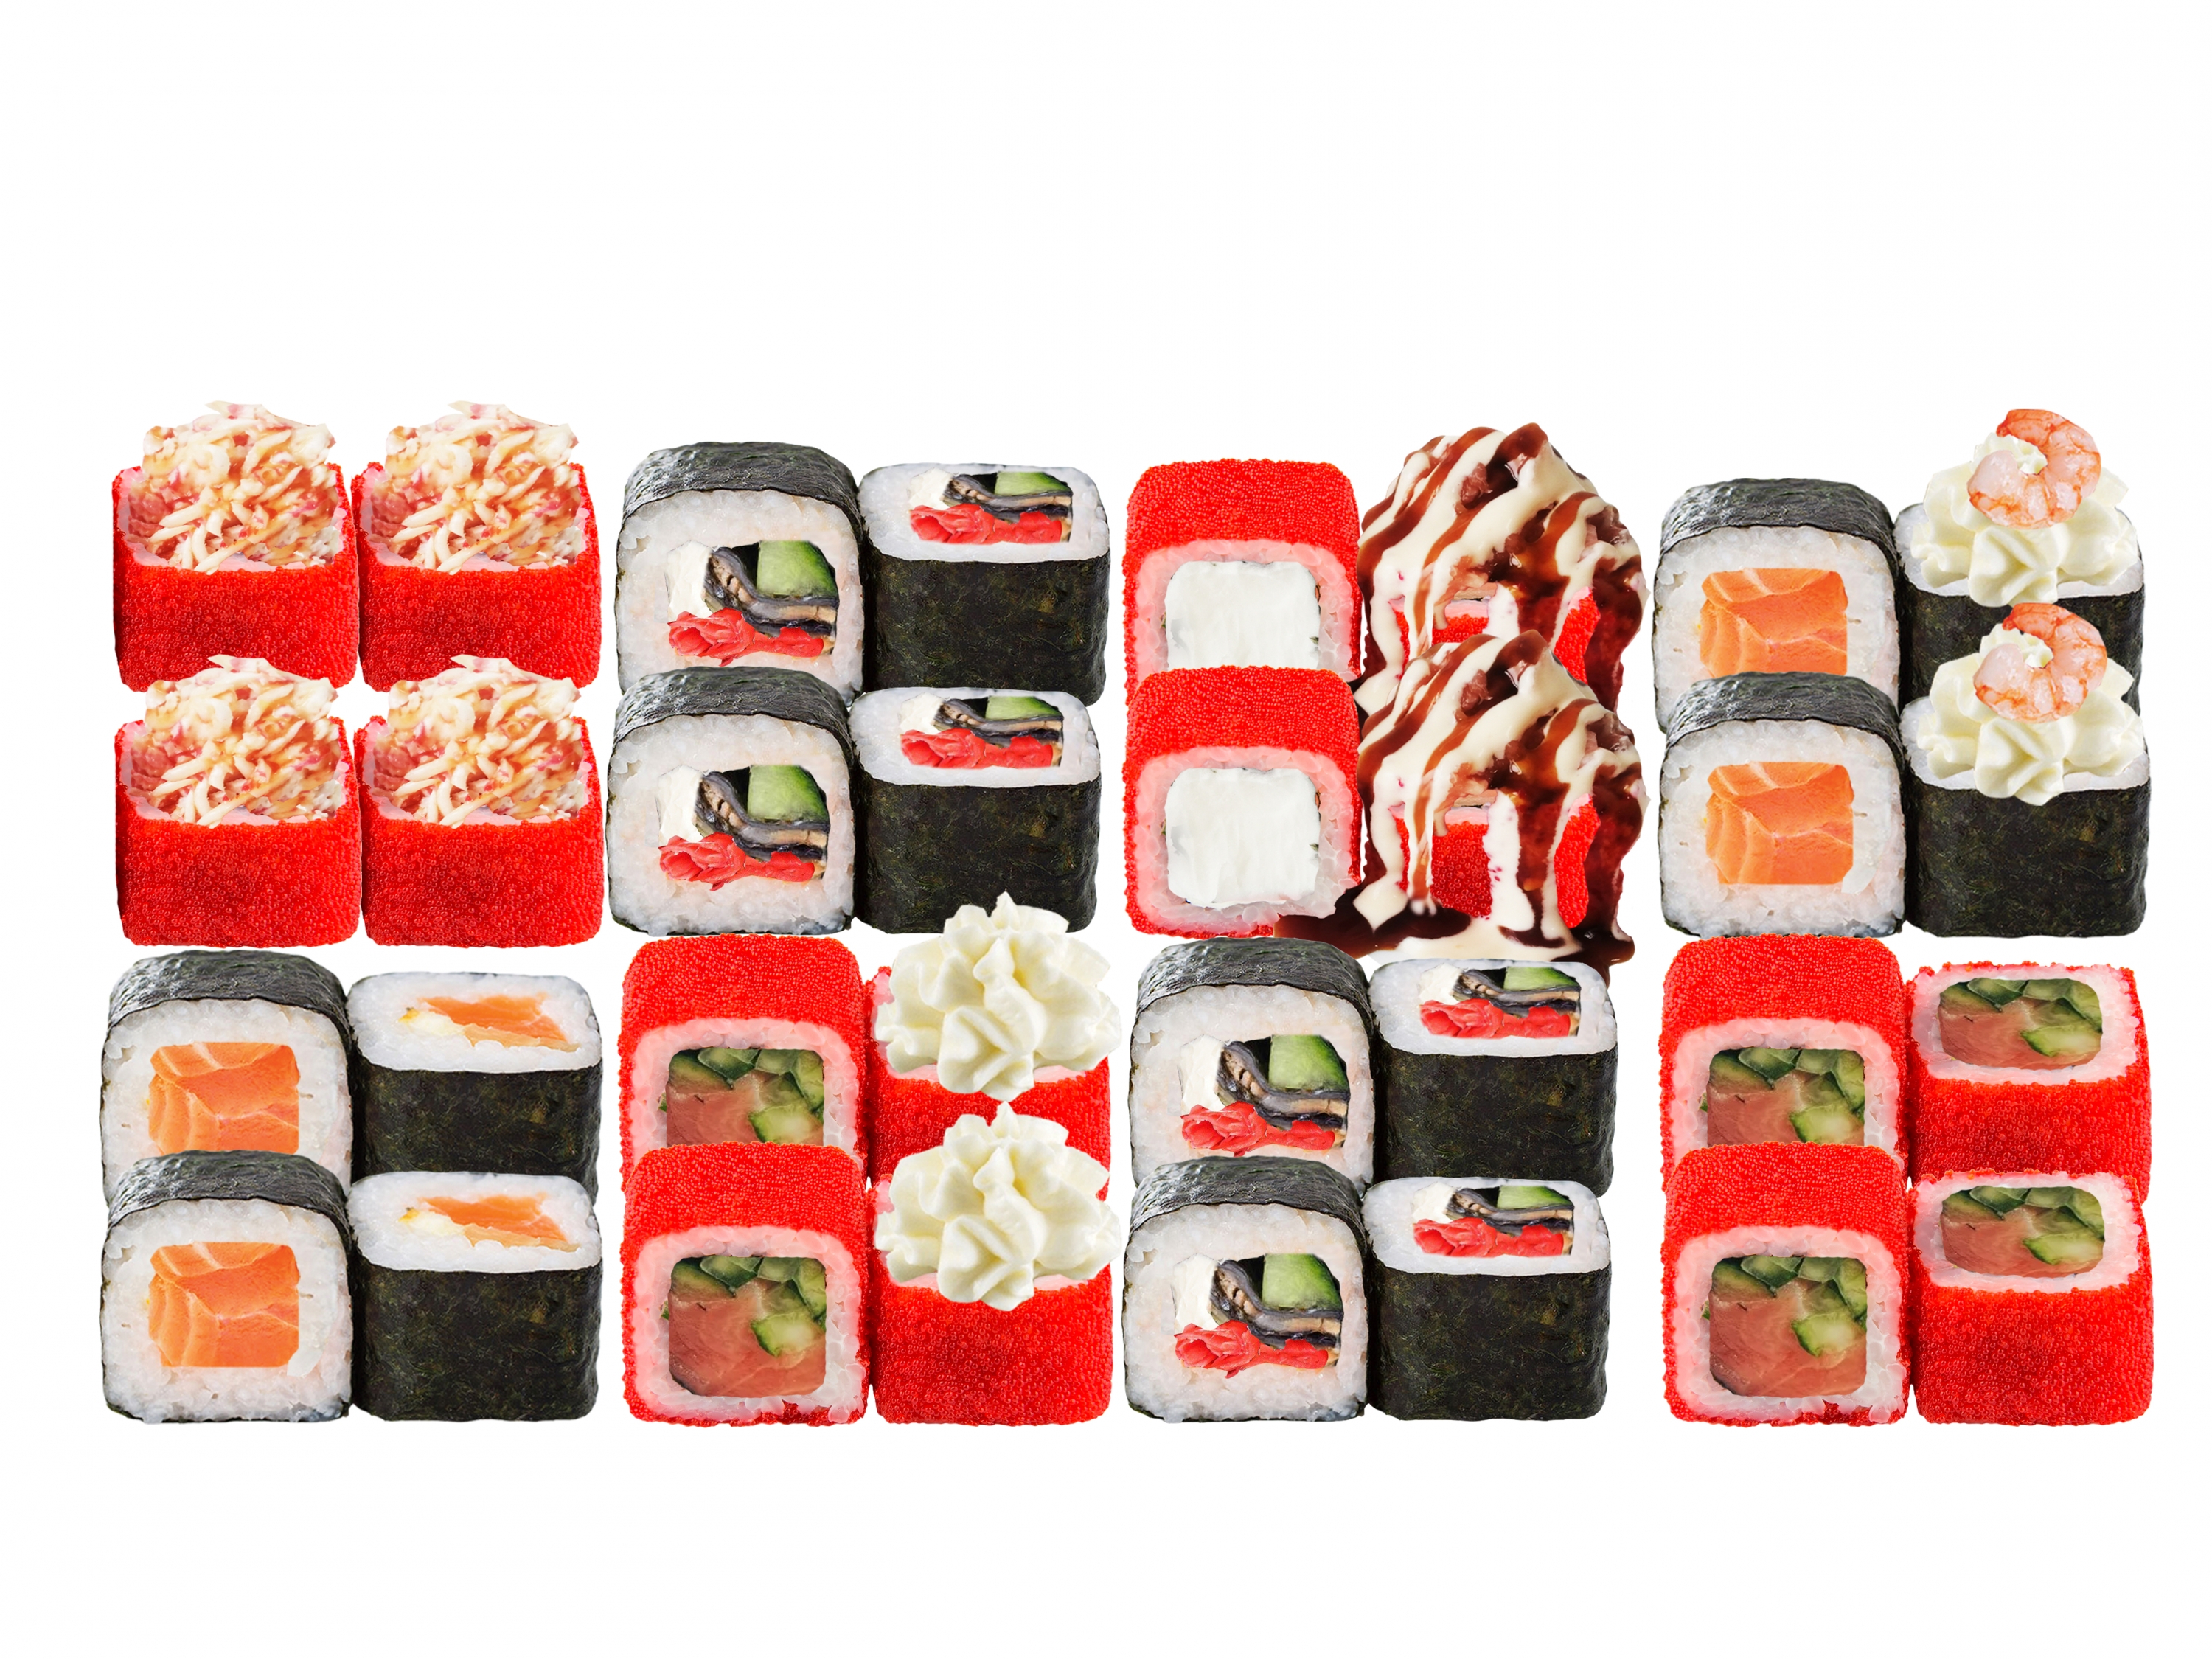 Заказать суши с бесплатной доставкой в волгограде фото 39